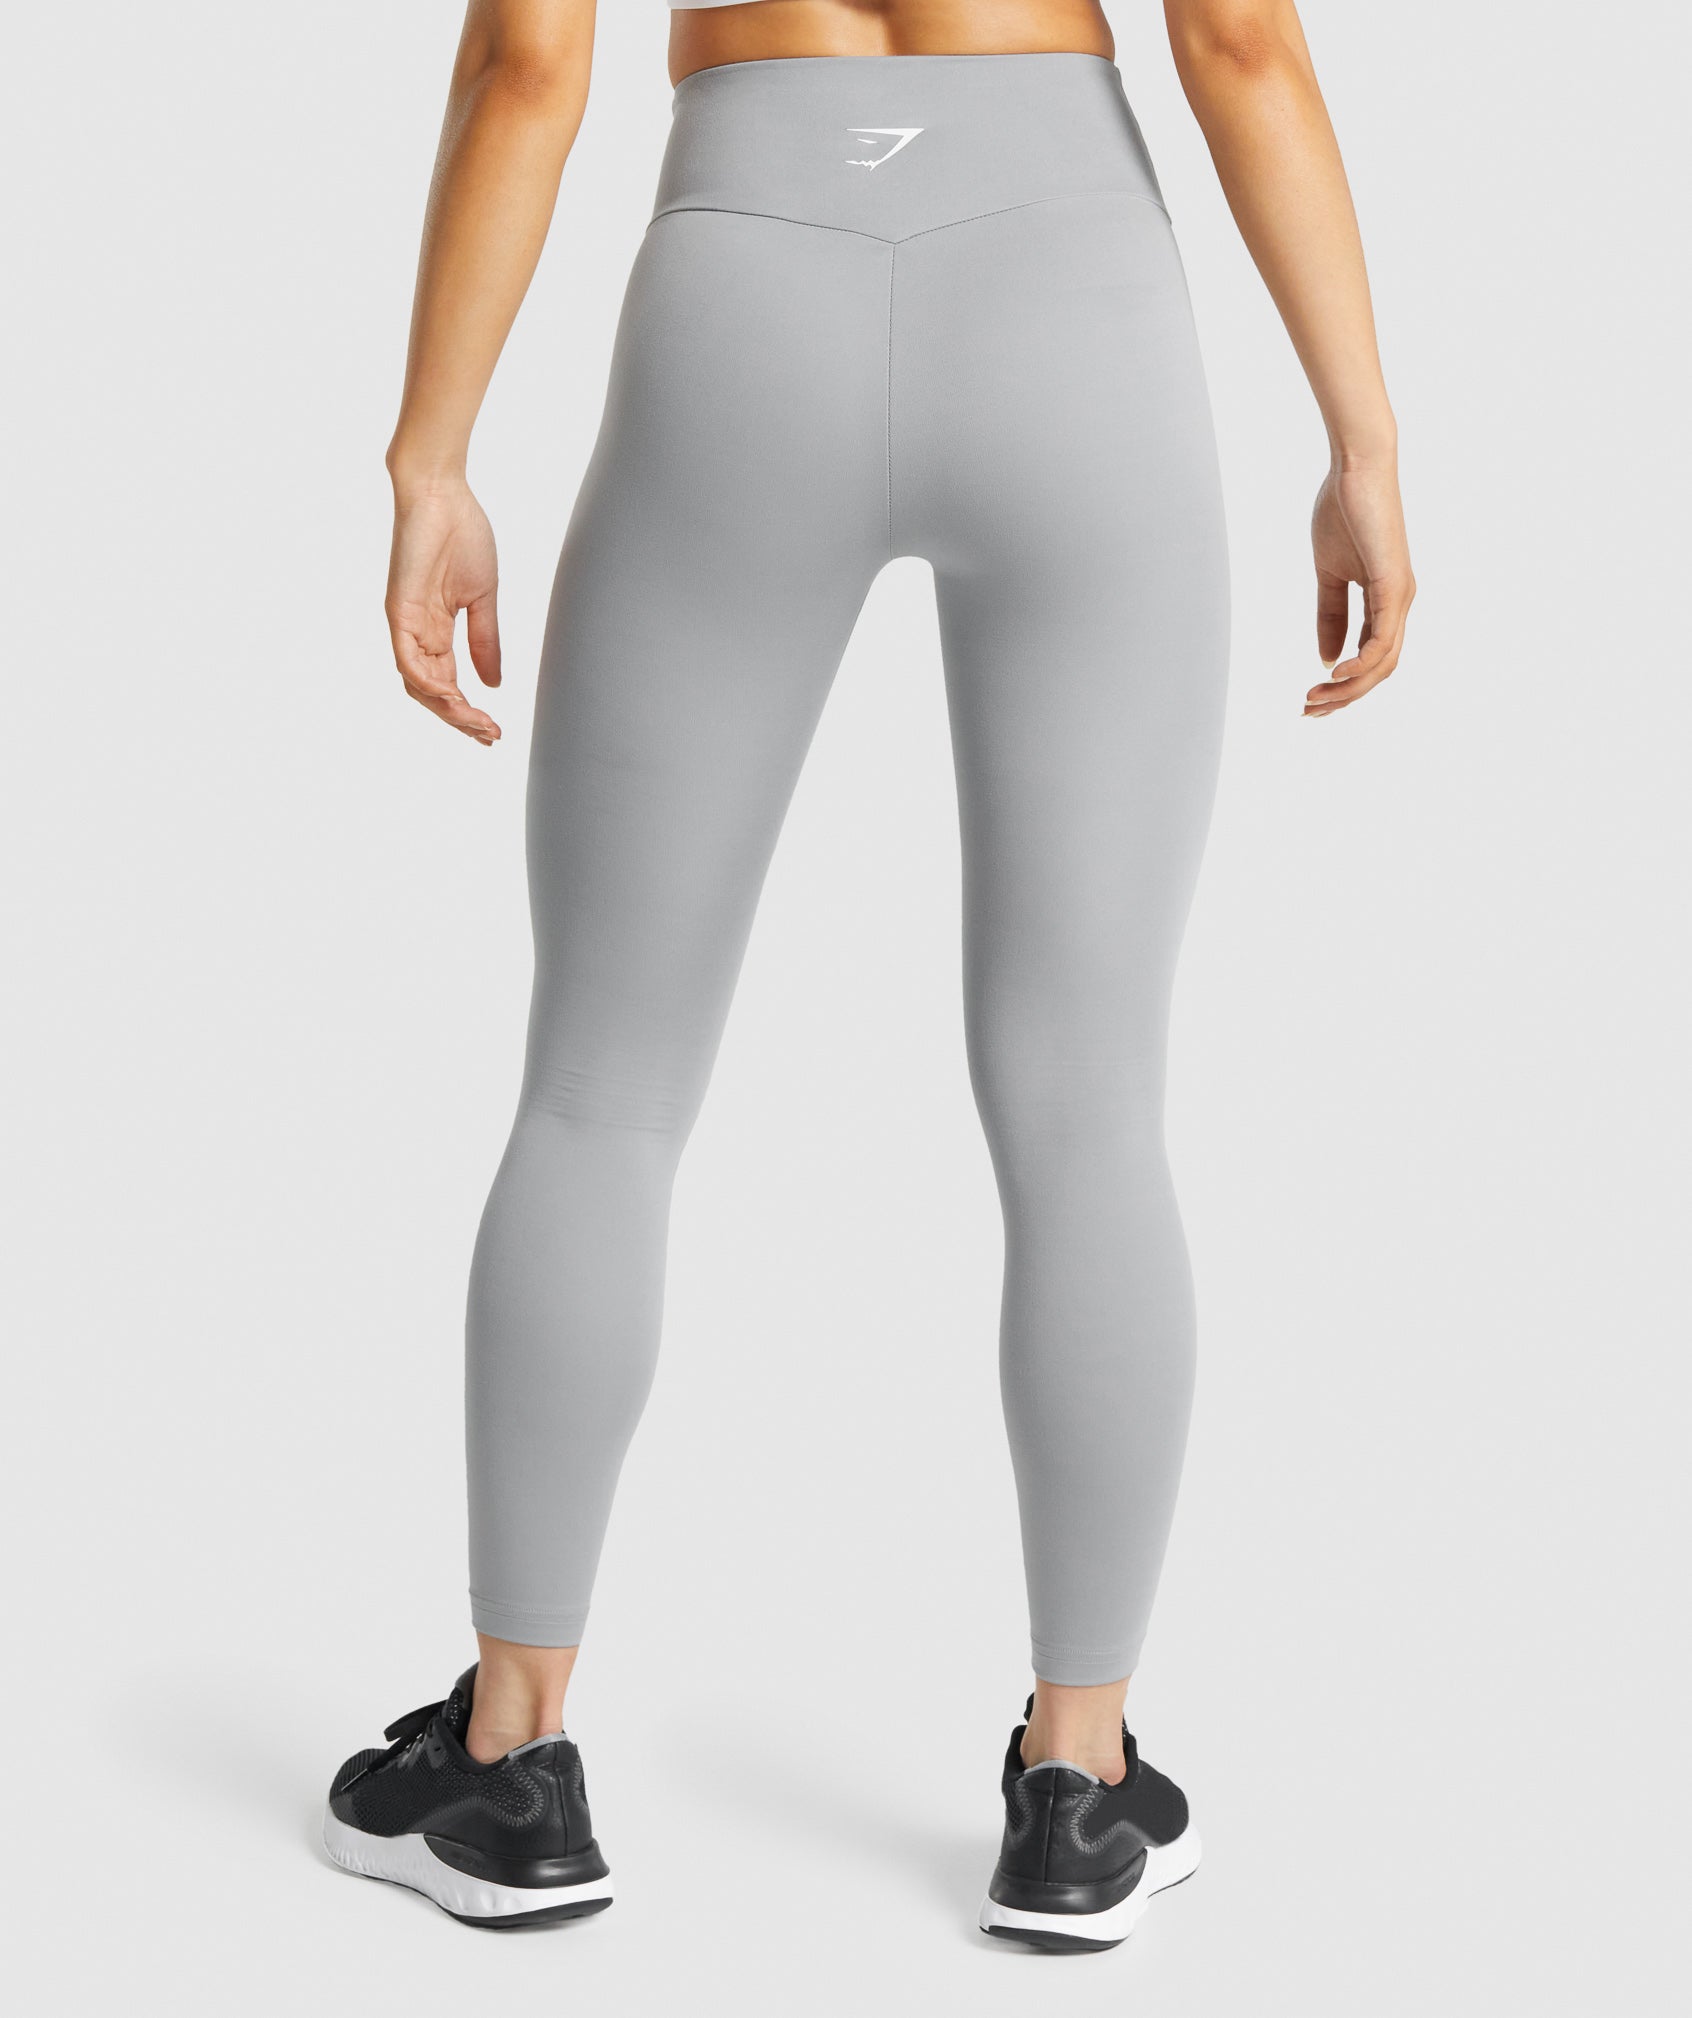 GYMSHARK Women's Speed Leggings, gray, S 